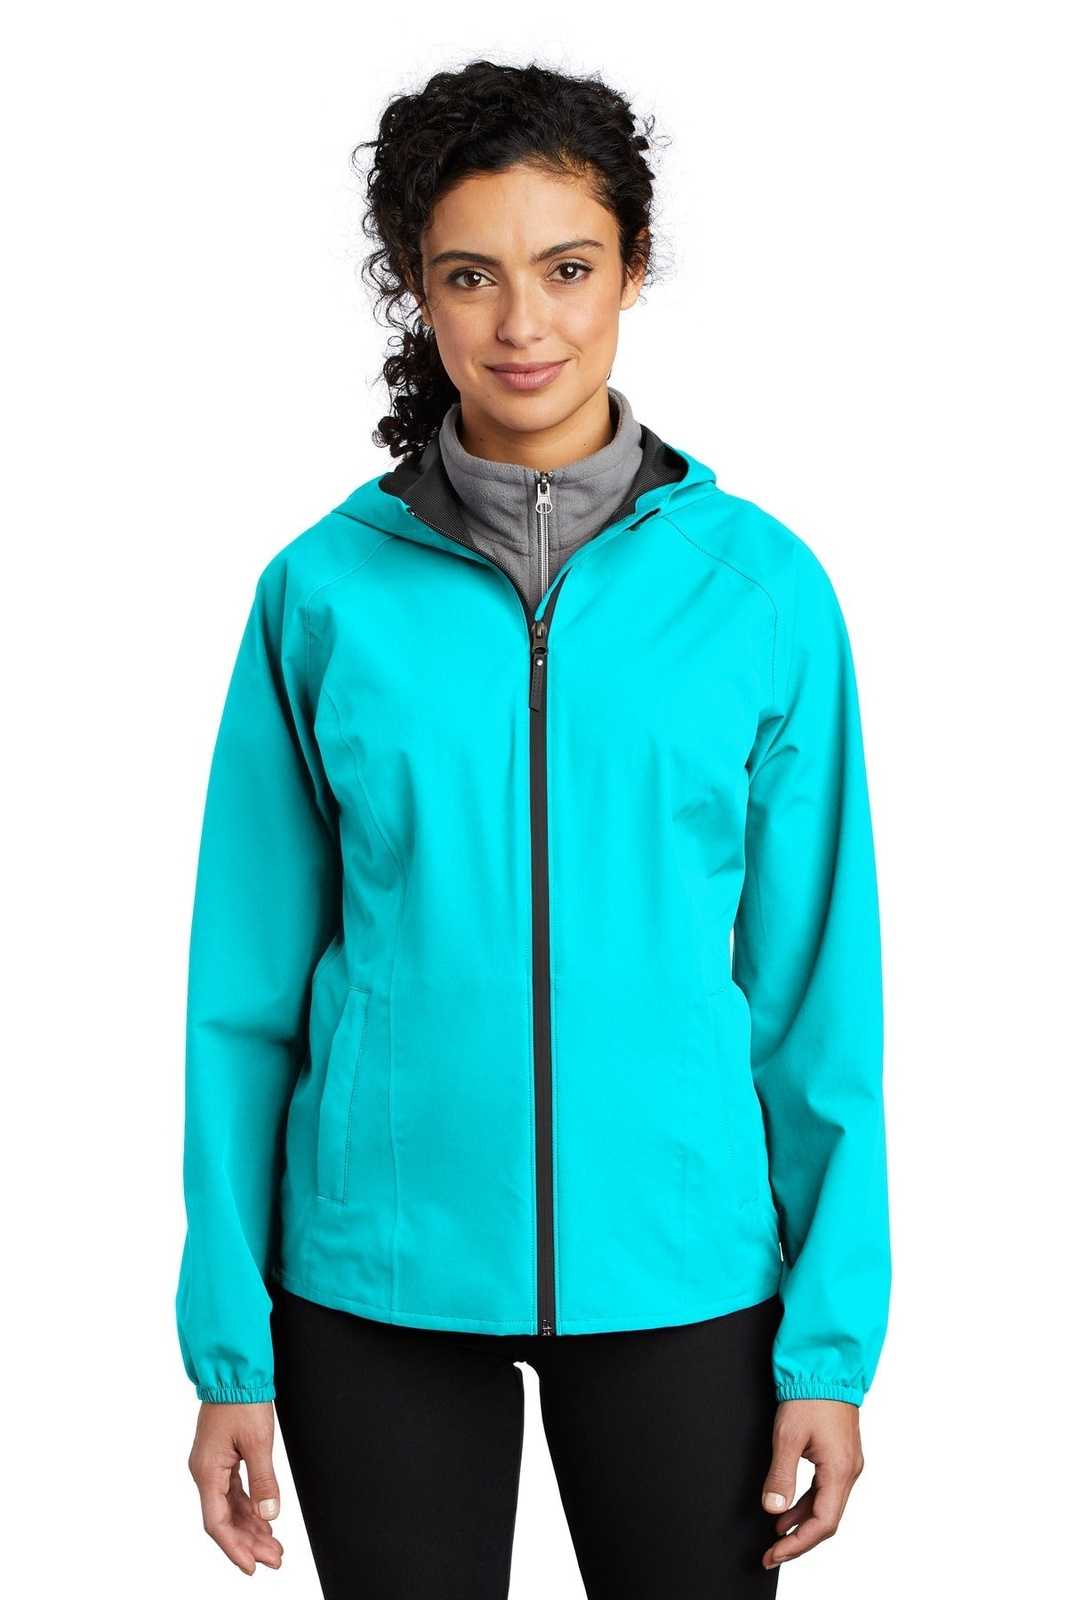 Port Authority L407 Ladies Essential Rain Jacket - Light Cyan Blue - HIT a Double - 1